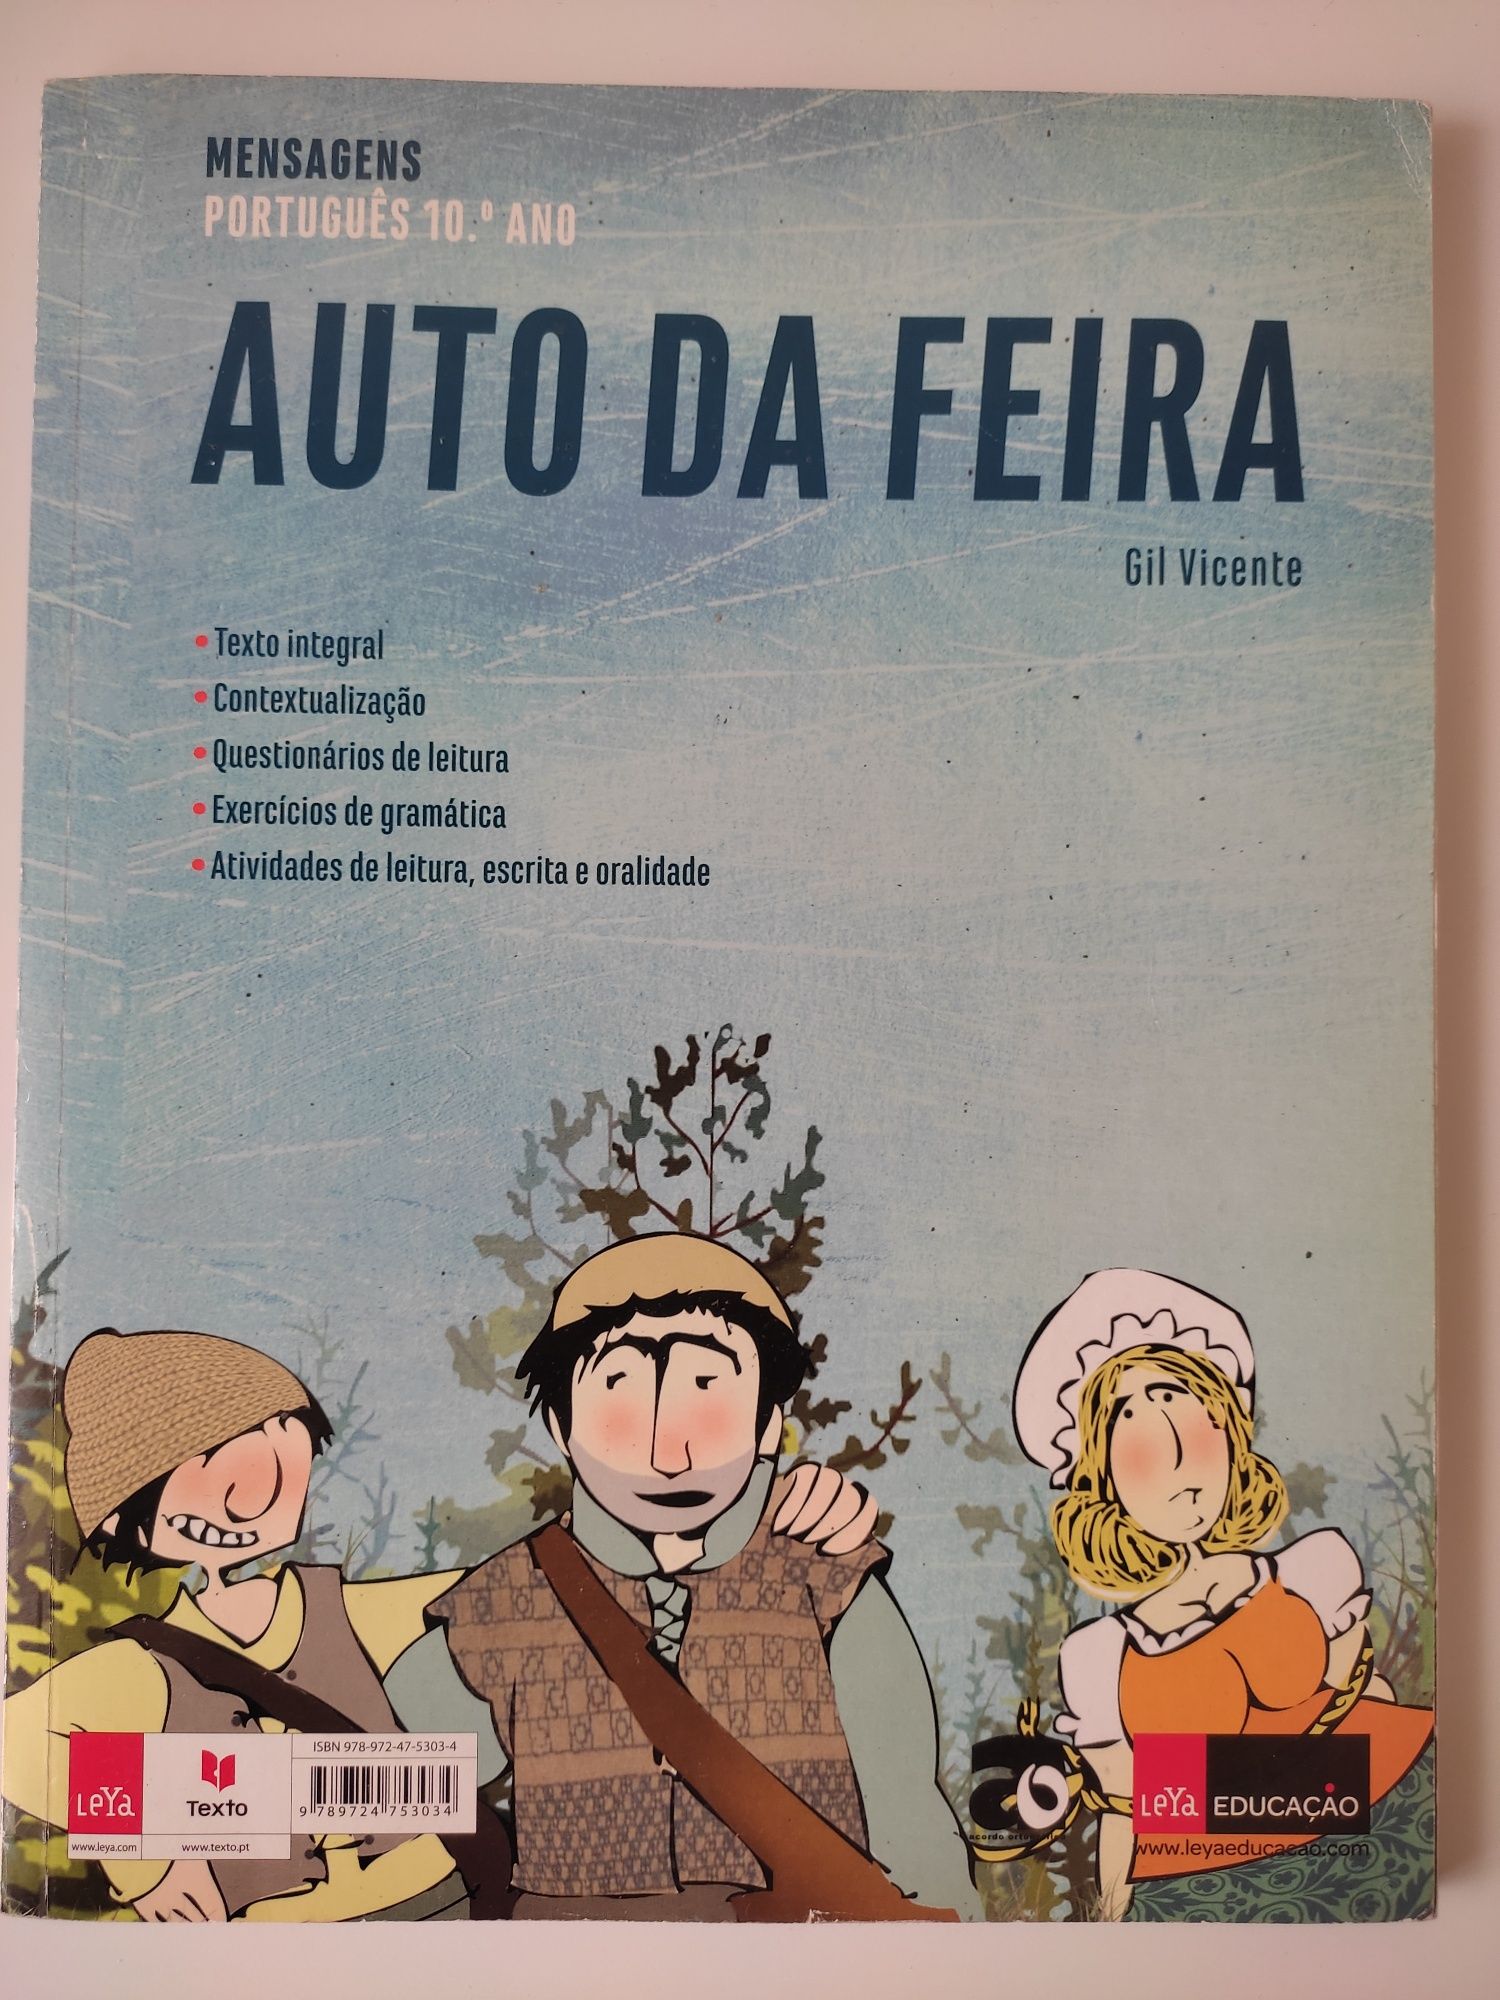 Manual de Português - 10° ano - "Mensagens"